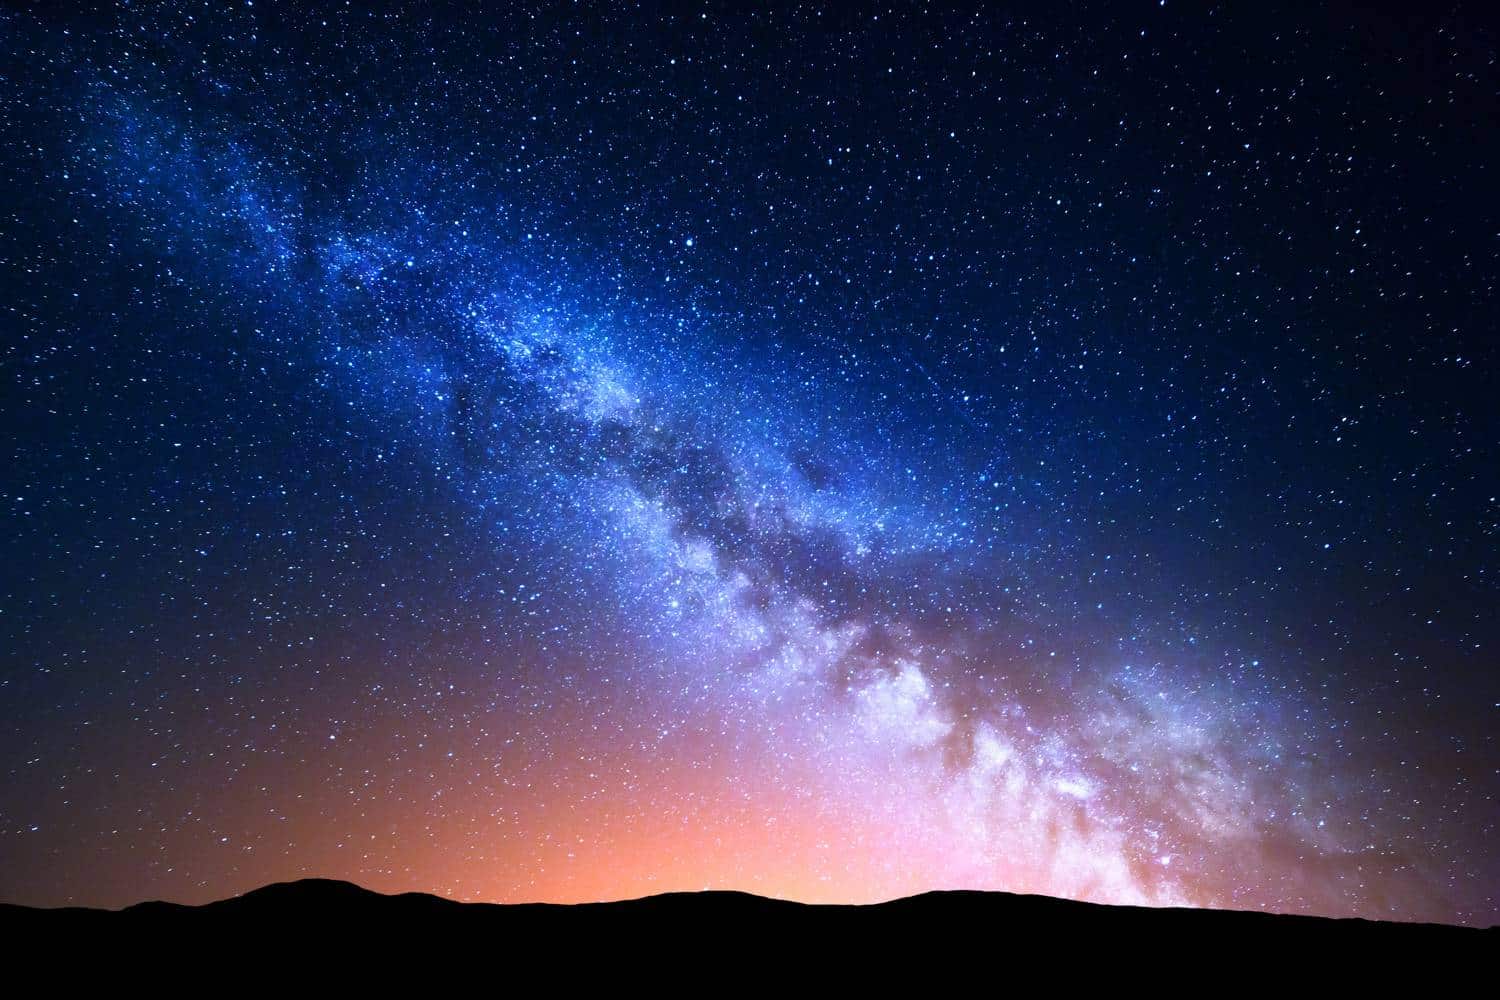 Descoberta muda concepções acerca da Via Láctea. Crédito: Denis Belitsky/Shutterstock